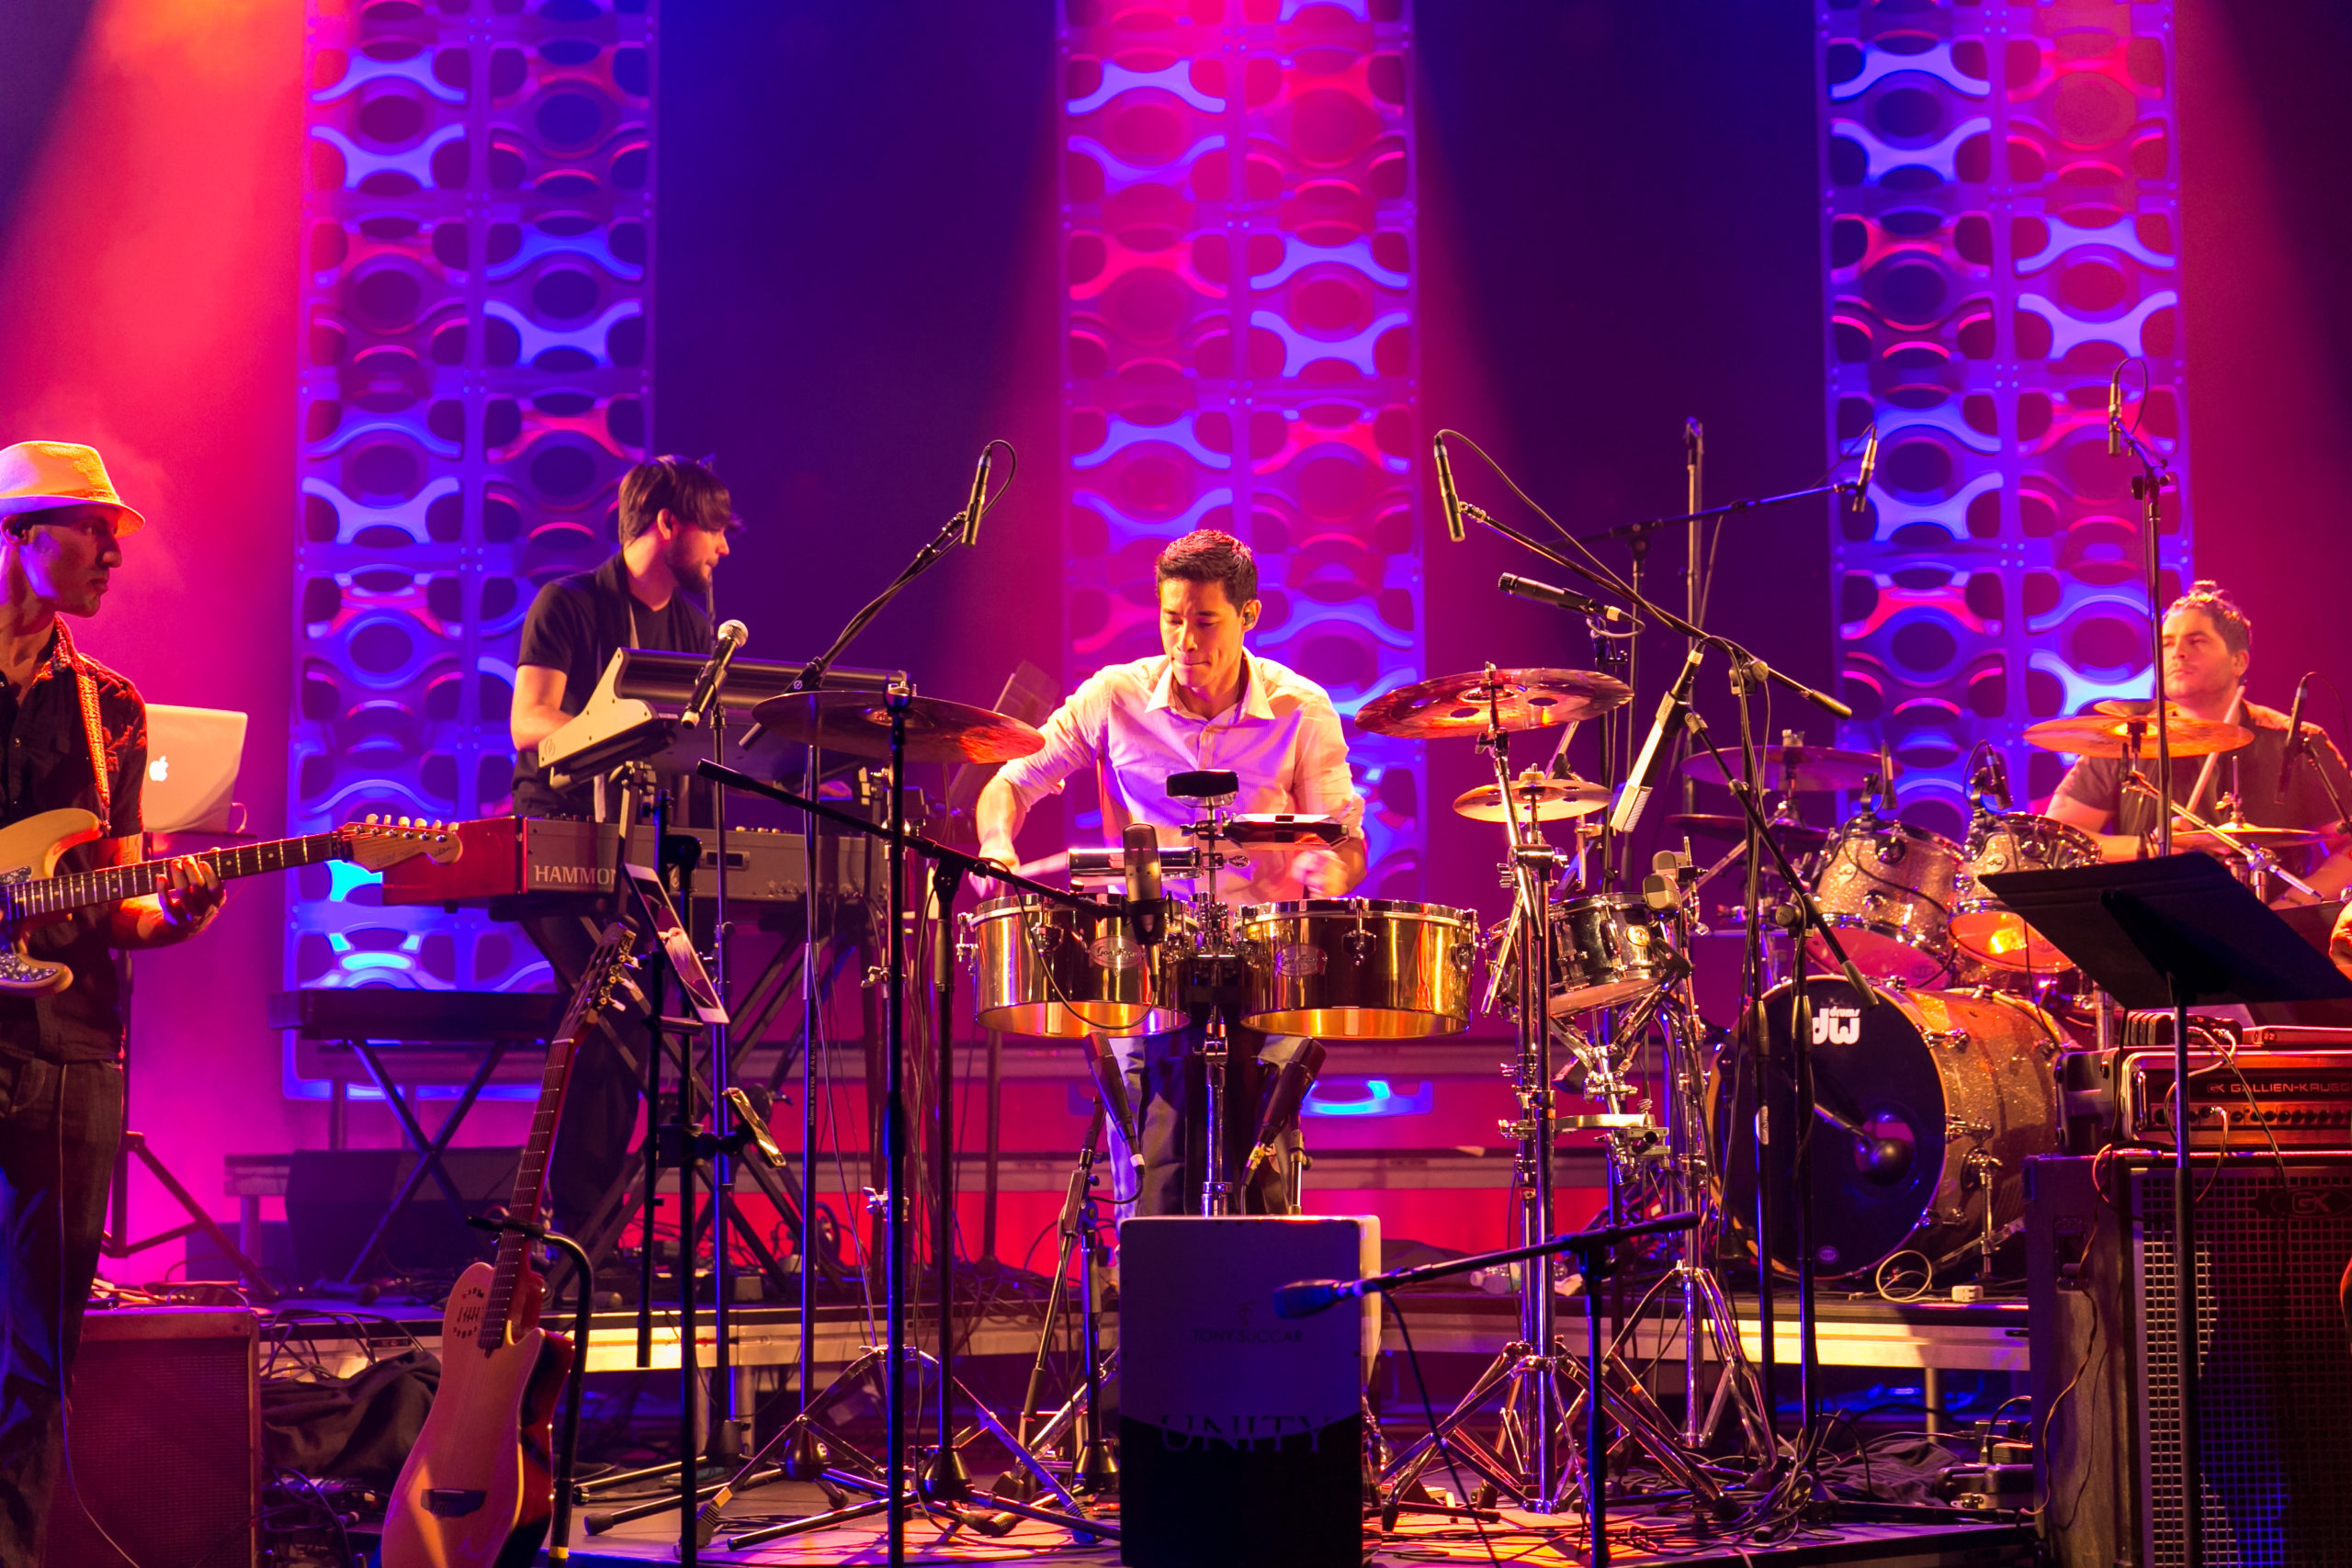 TONY SUCCAR, ganador del Grammy Latino, debuta su nuevo proyecto “LIVE